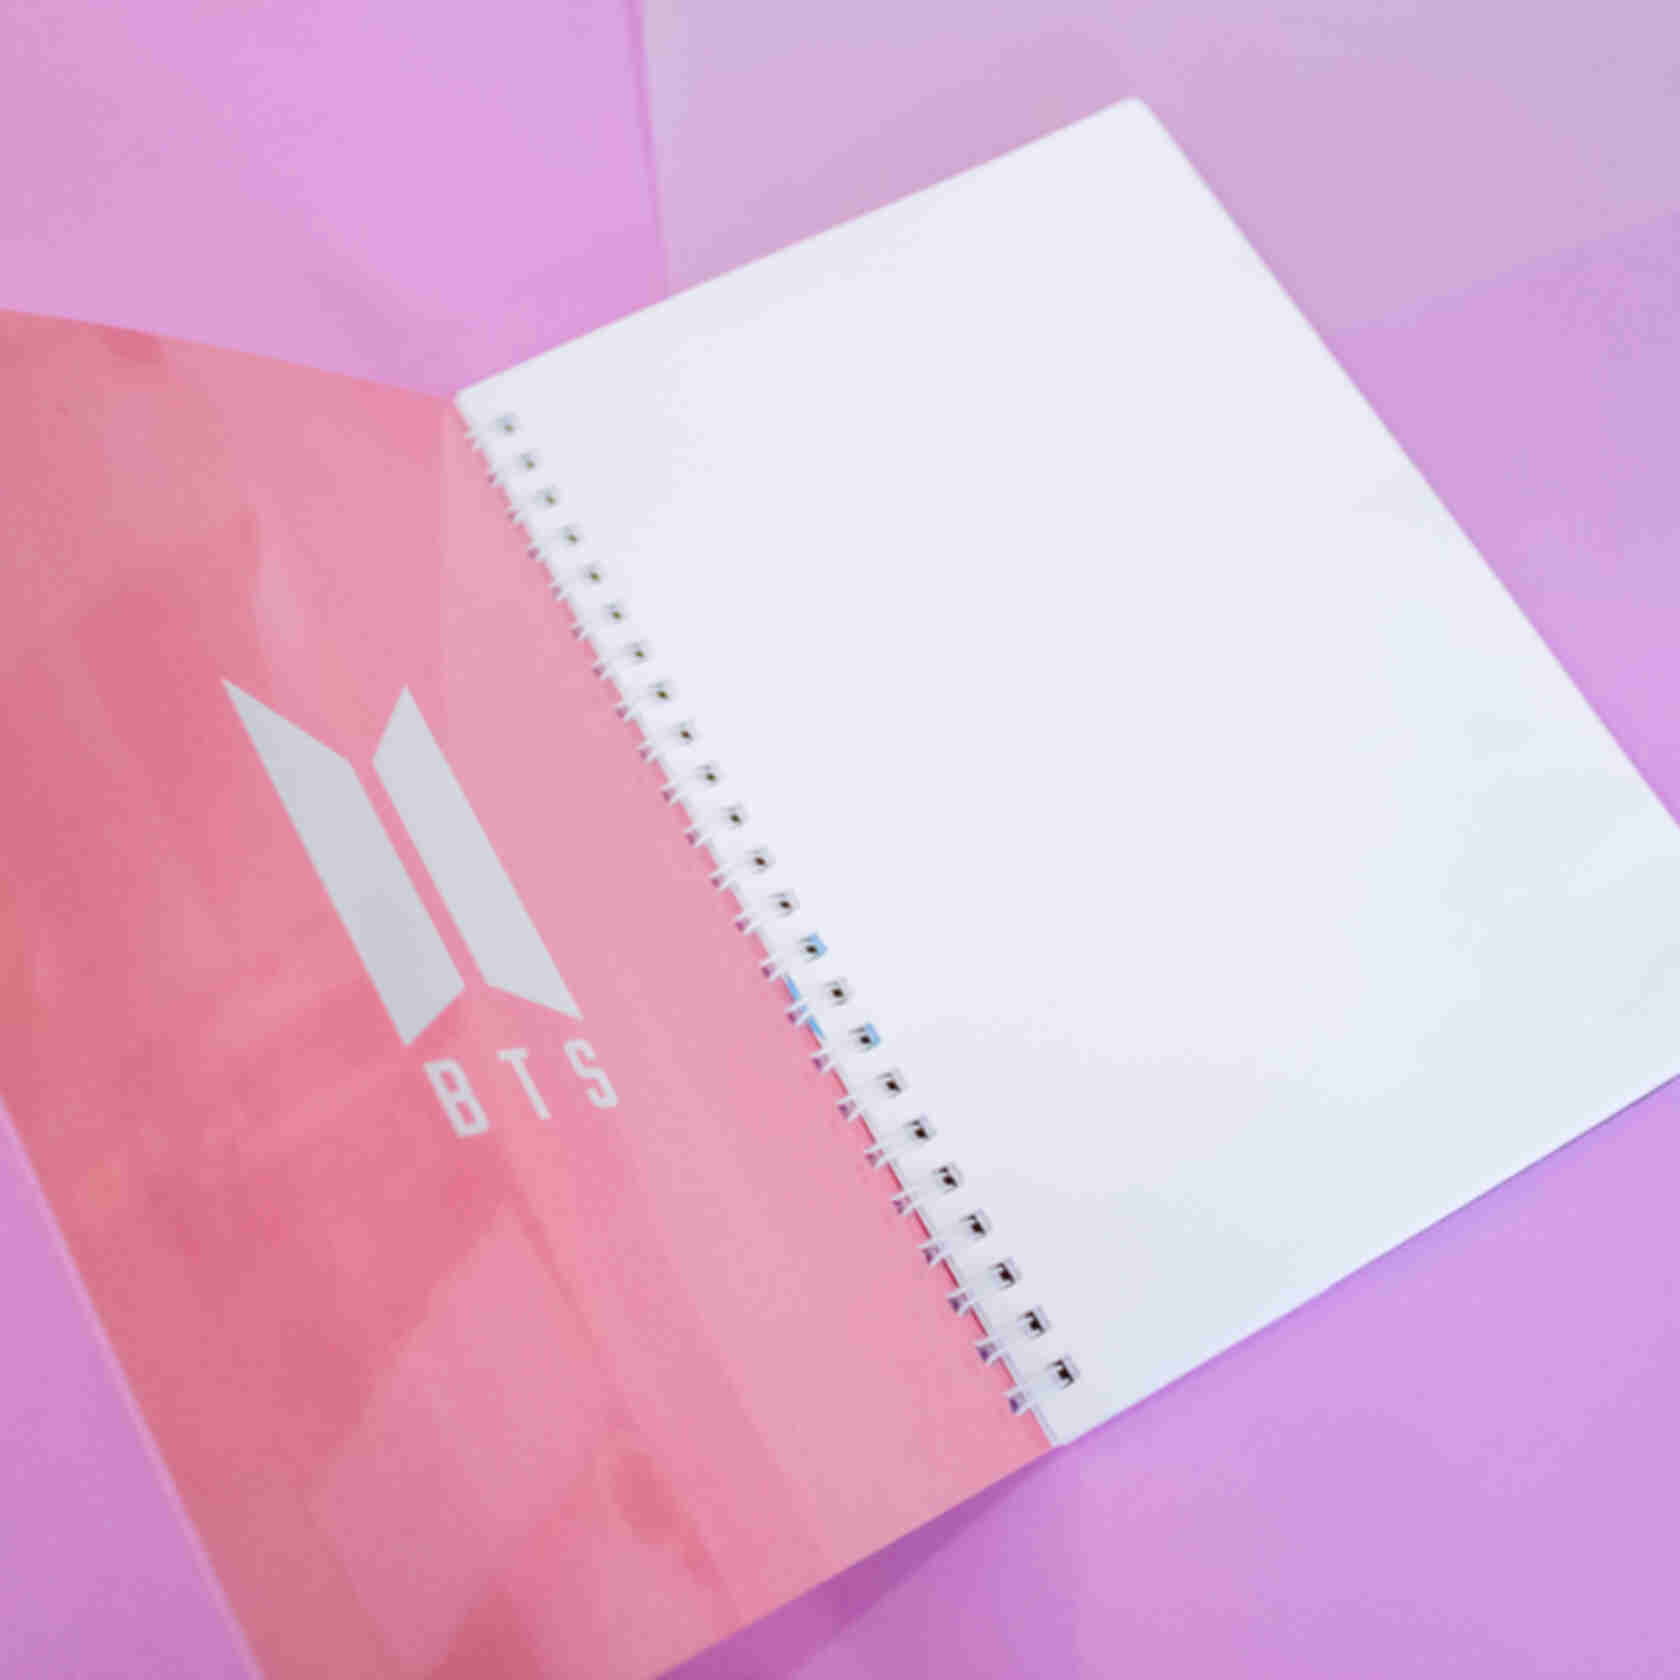 Блокнот • БТС ⦁ Скетчбук в м'якій палітурці ⦁ Подарунок для фанатів K-POP та корейської групи BTSФото №1